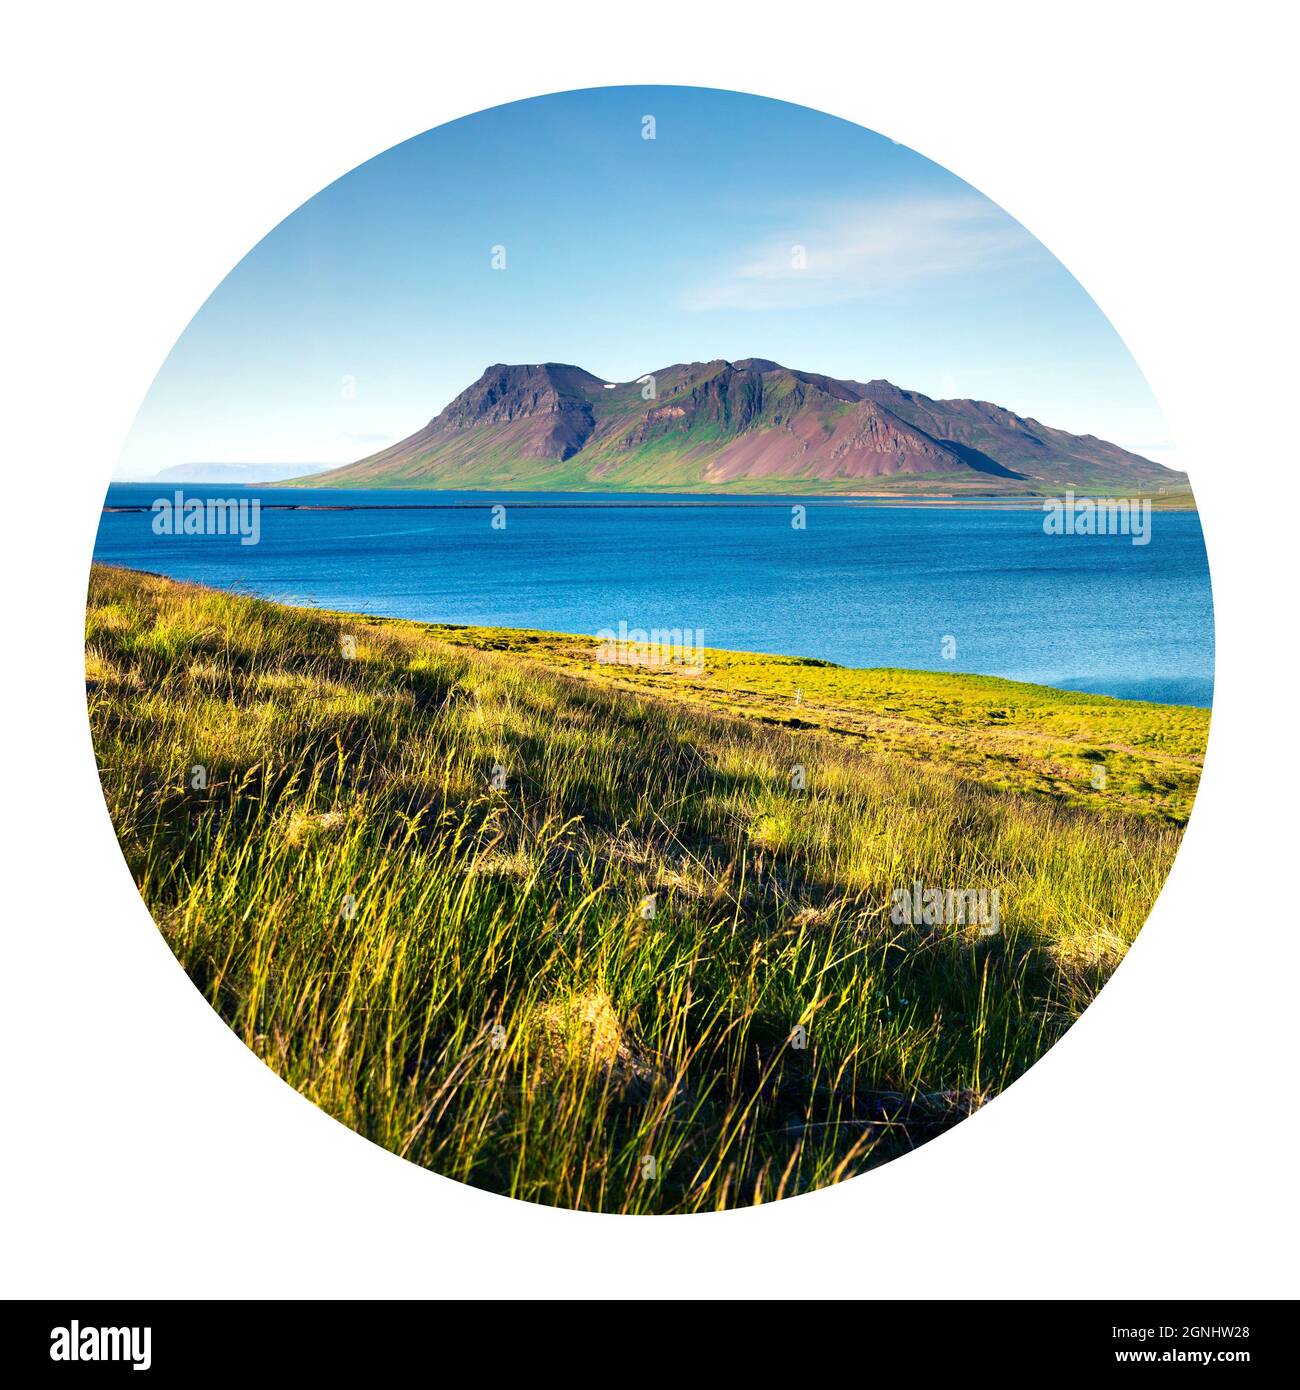 Typische isländische Landschaft mit vulkanischen Bergen und reinem Wasserfluss. Sonniger Sommermorgen an der Westküste Islands, Europa. Fotografie in einem Kreis Stockfoto